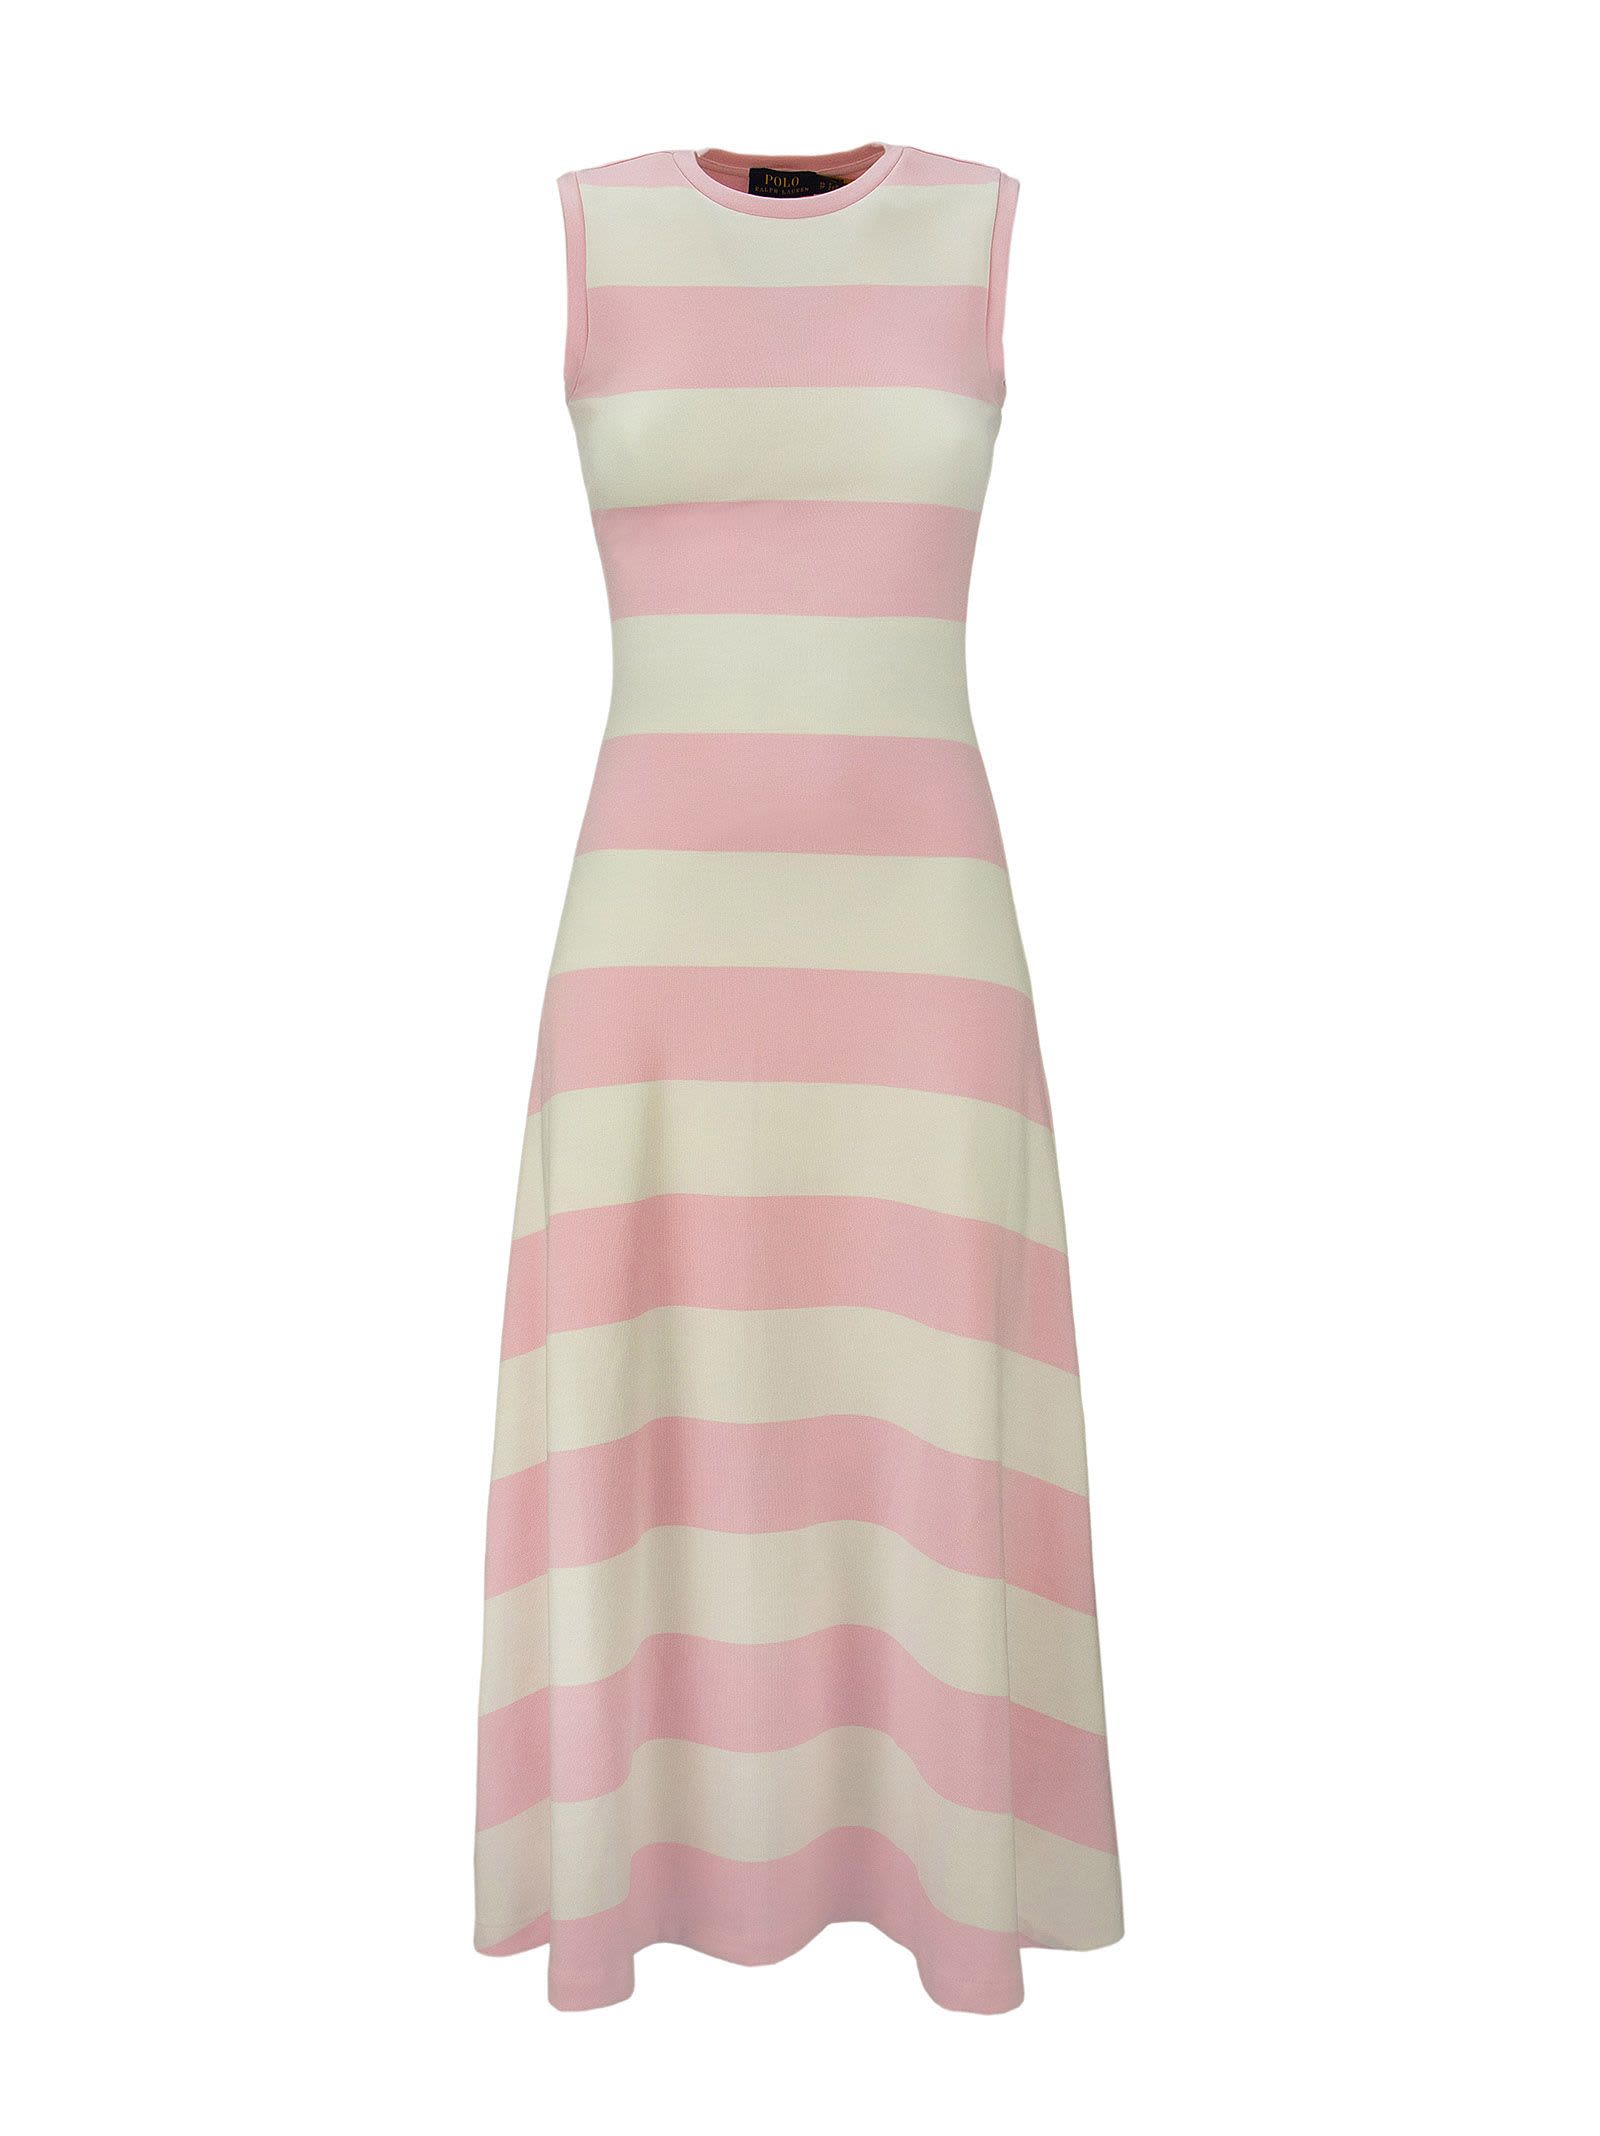 Ralph Lauren Striped Sleeveless Dress